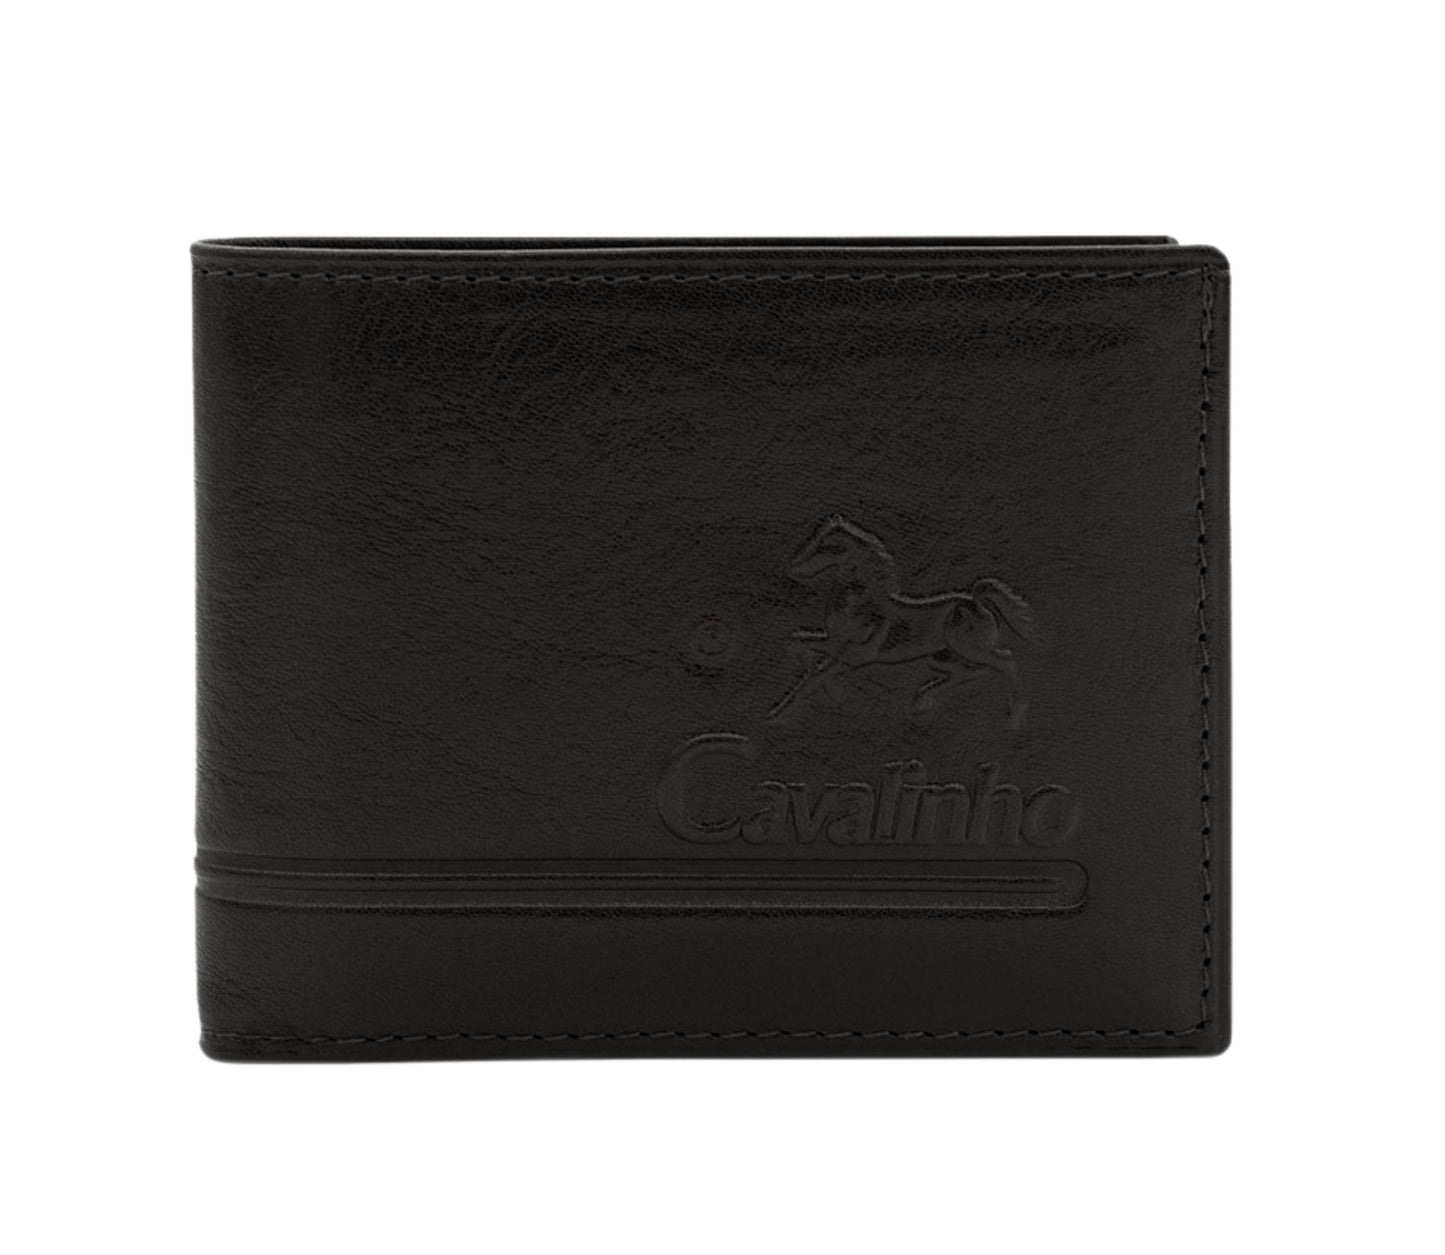 Cavalinho Men's 2 in 1 Bifold Leather Wallet - Black - 28610528.01_1